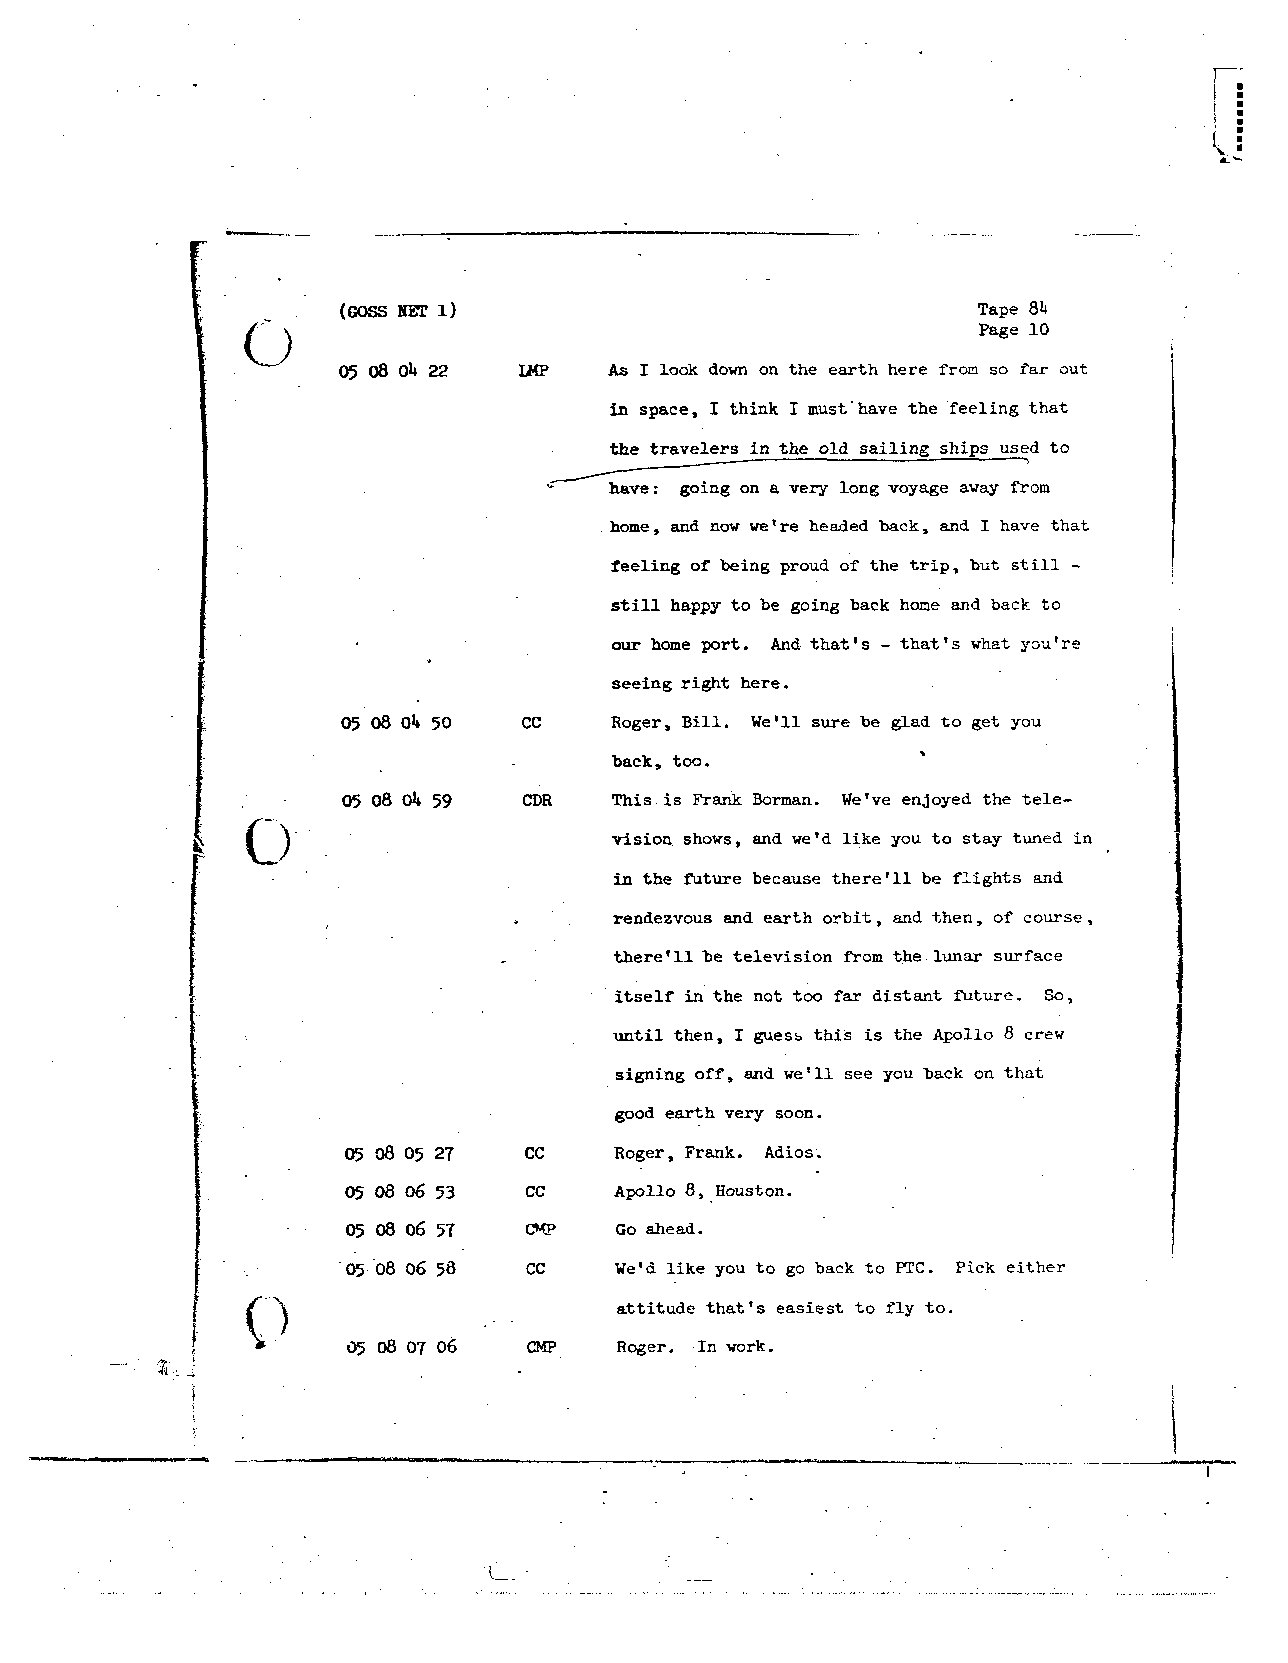 Page 696 of Apollo 8’s original transcript